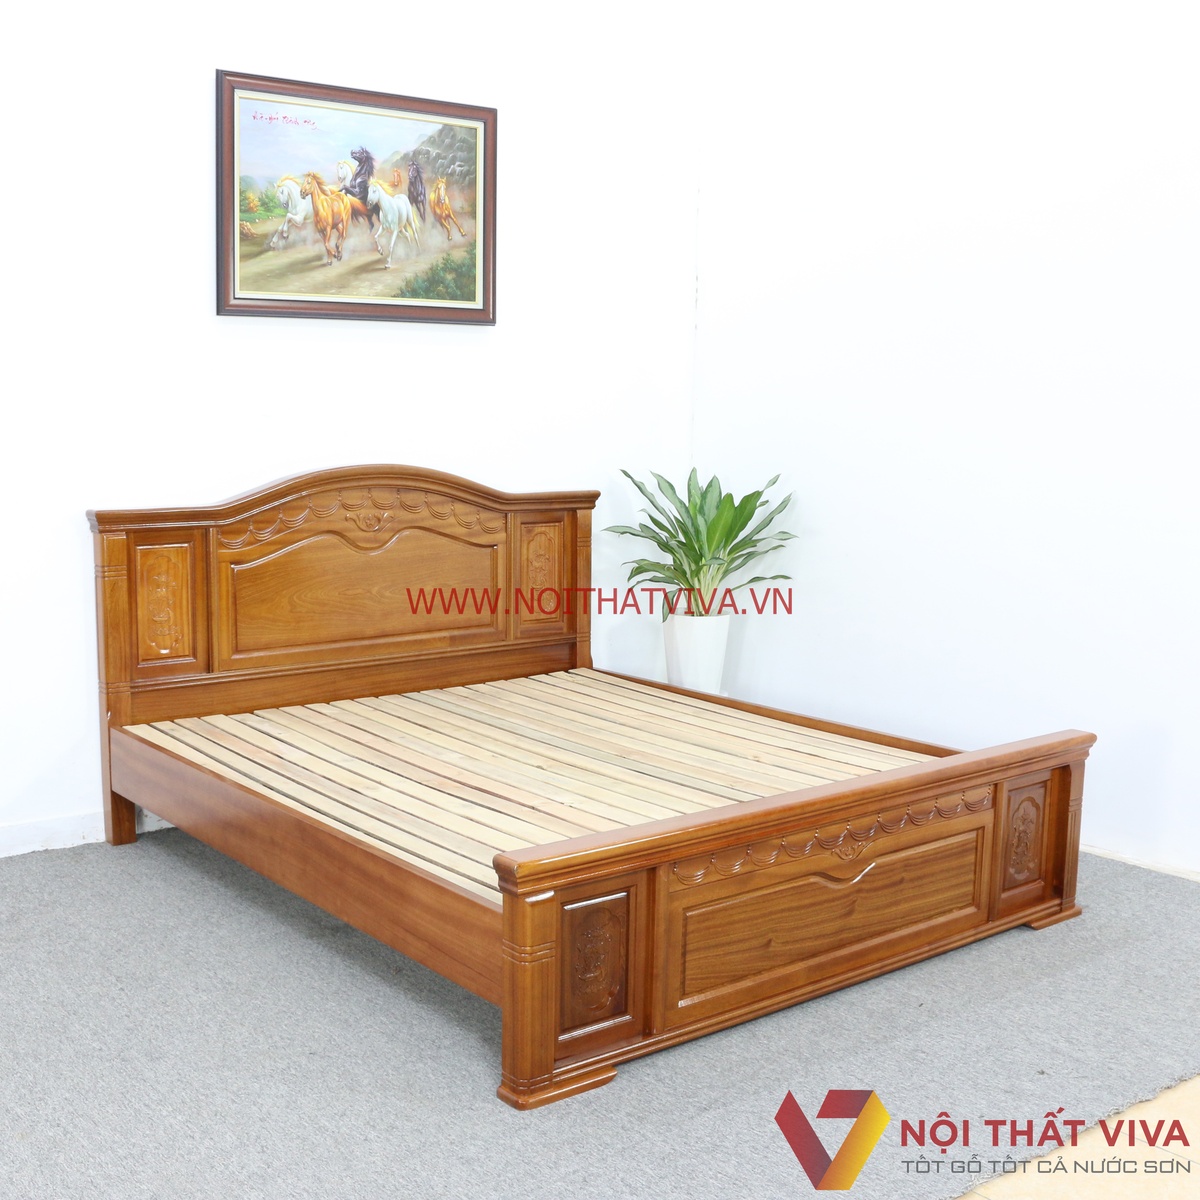 Giường ngủ gỗ xoan vô vàn lựa chọn – mang đến không gian hoàn hảo